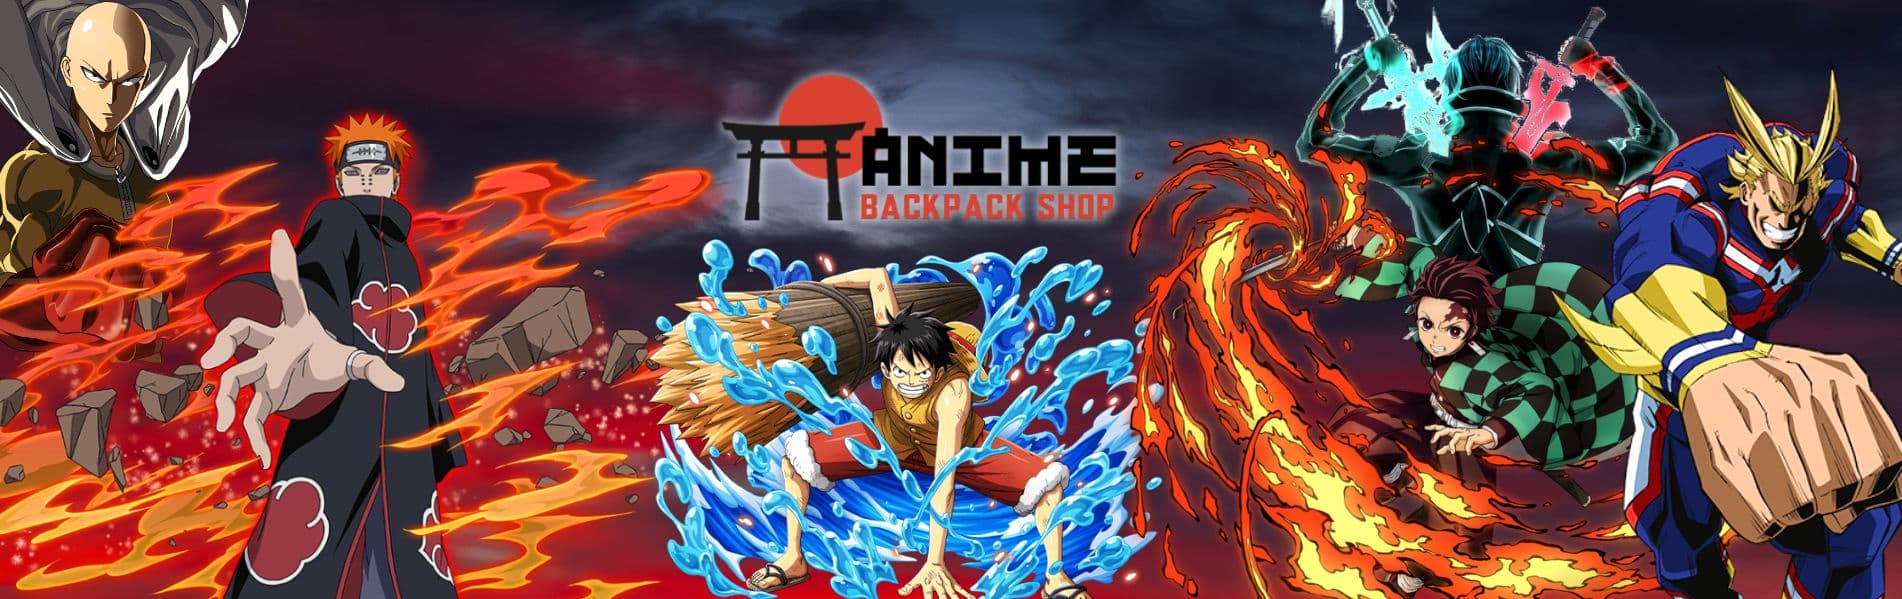 Anime Backpack Shop Banner